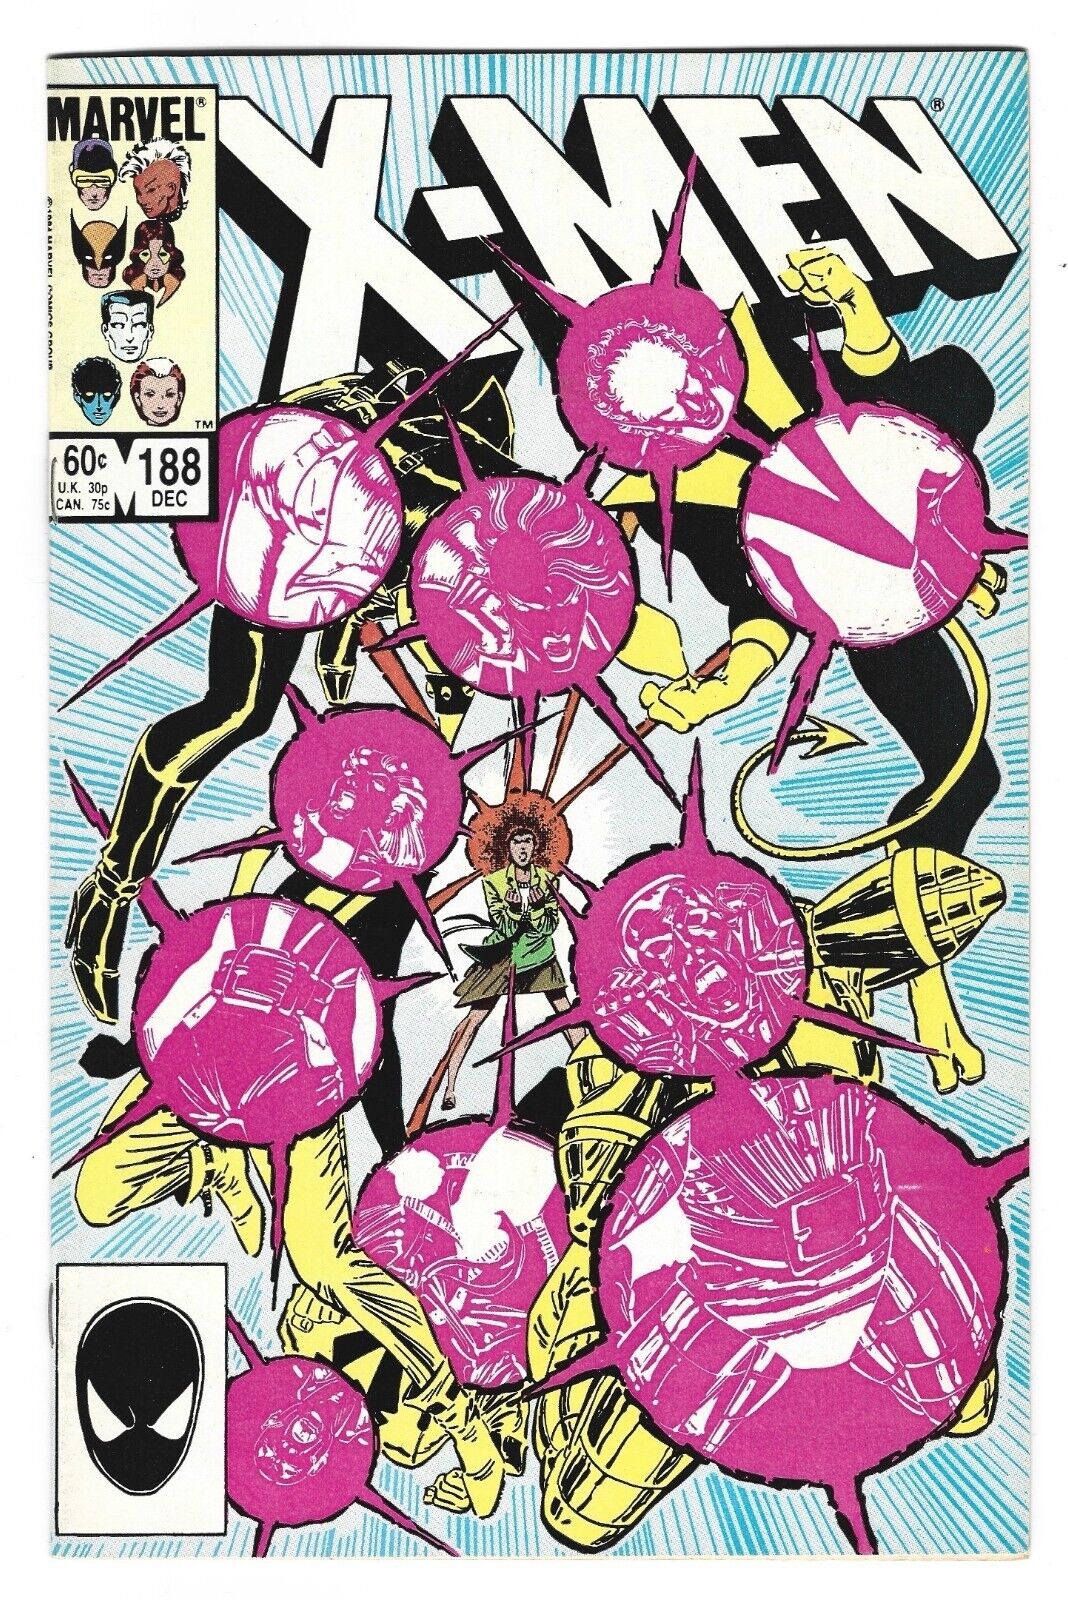 The Uncanny X-Men  #188 1984